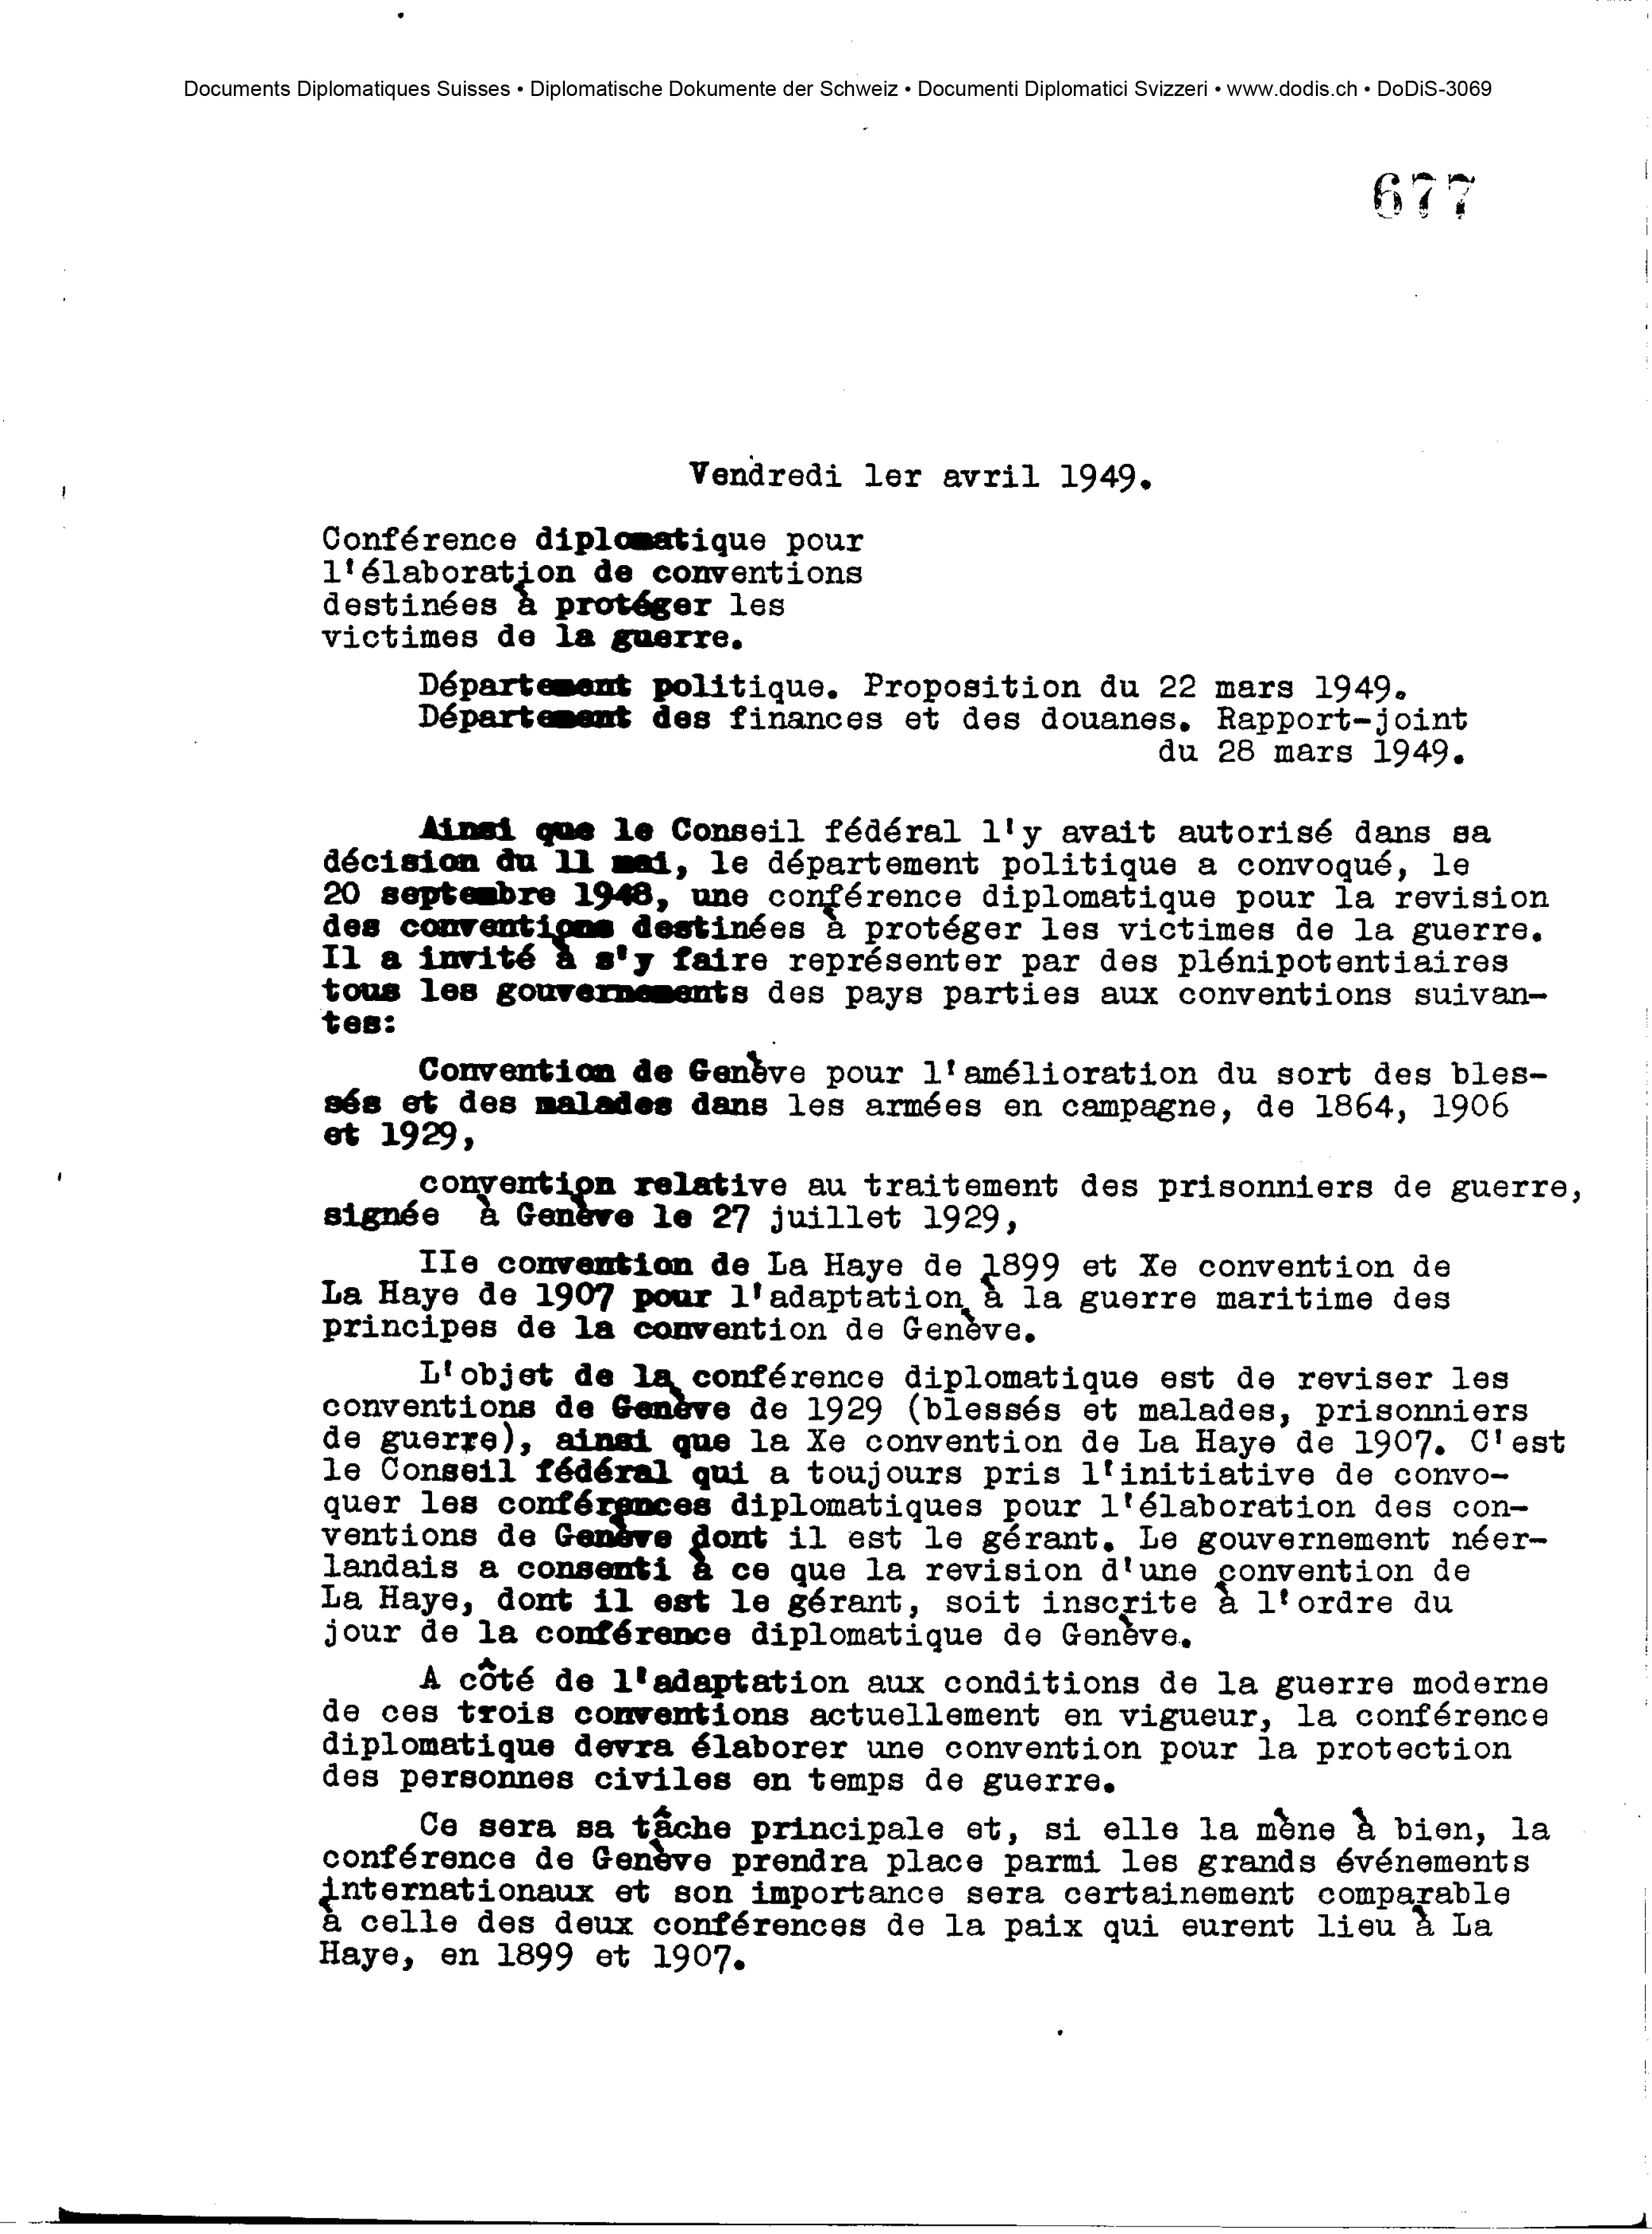 Federal Council decision, 1 April 1949 